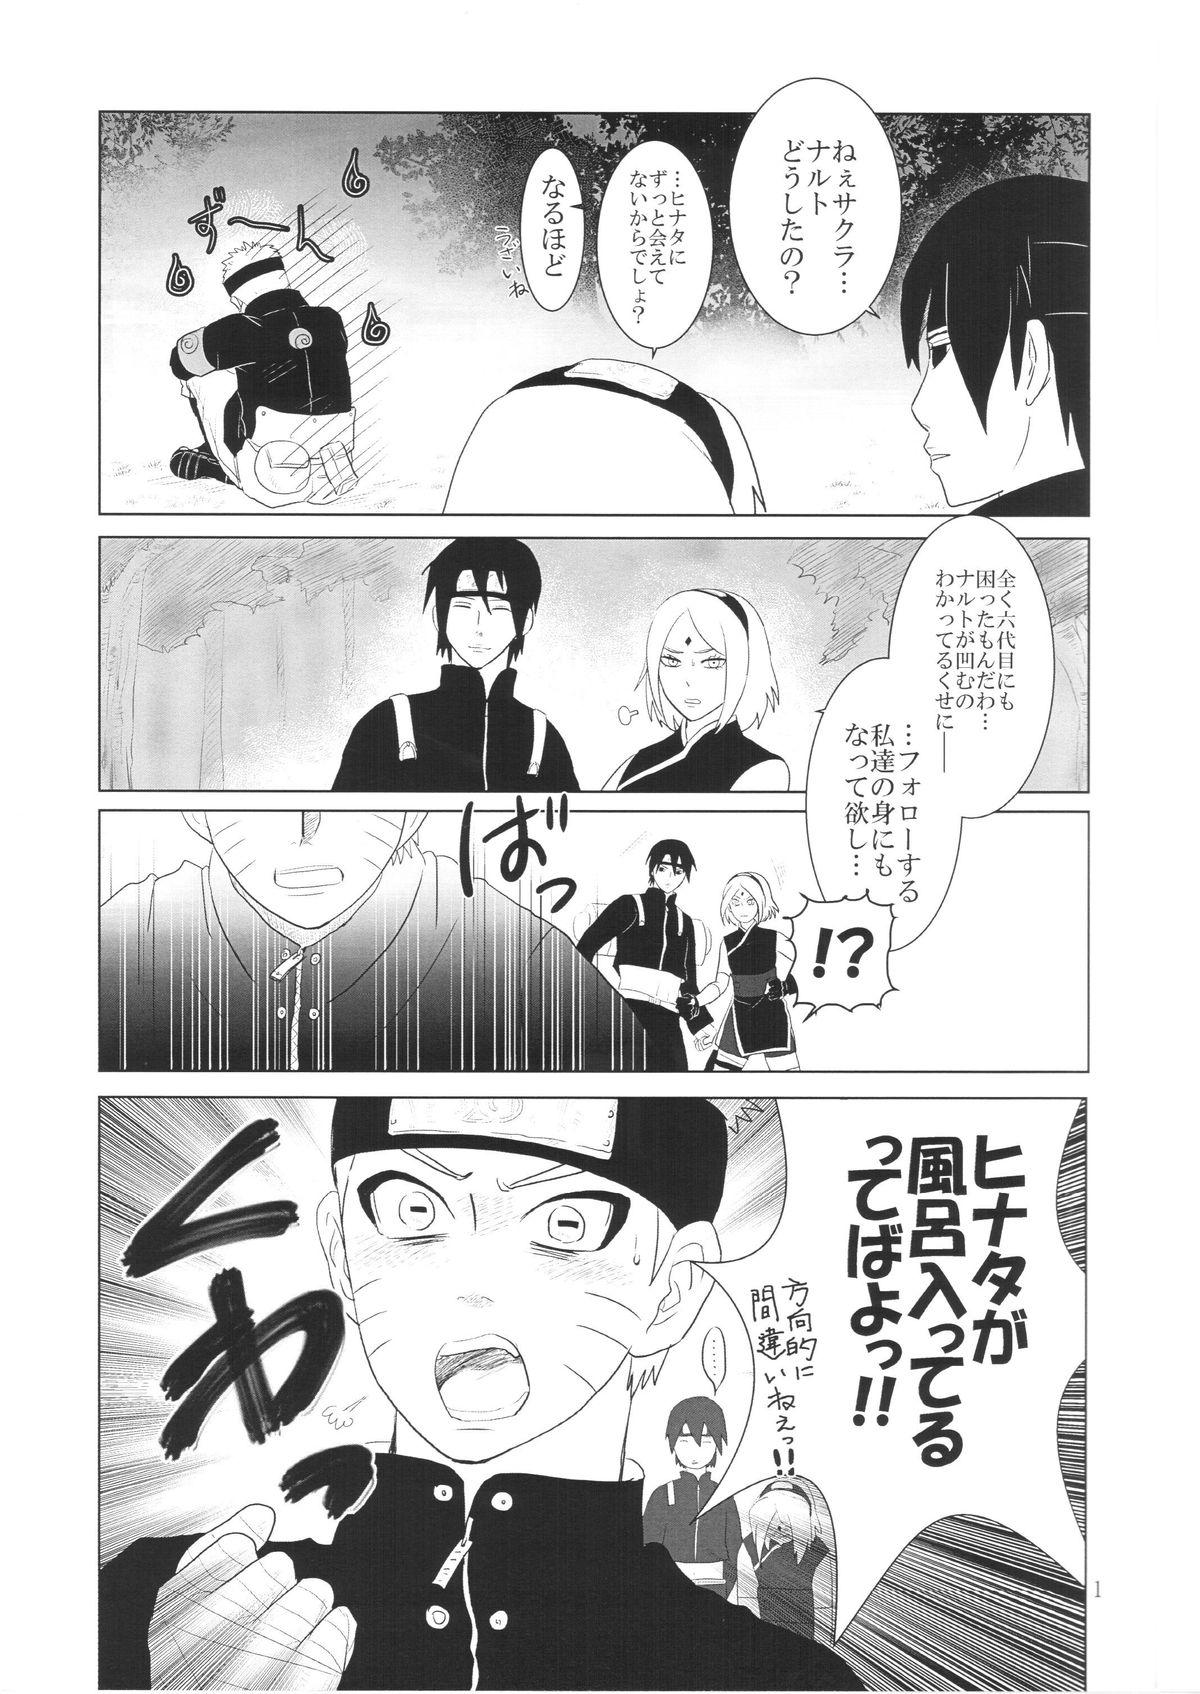 Gang Kanata no omoi wa ryoute ni tokeru - Naruto Tribute - Page 4